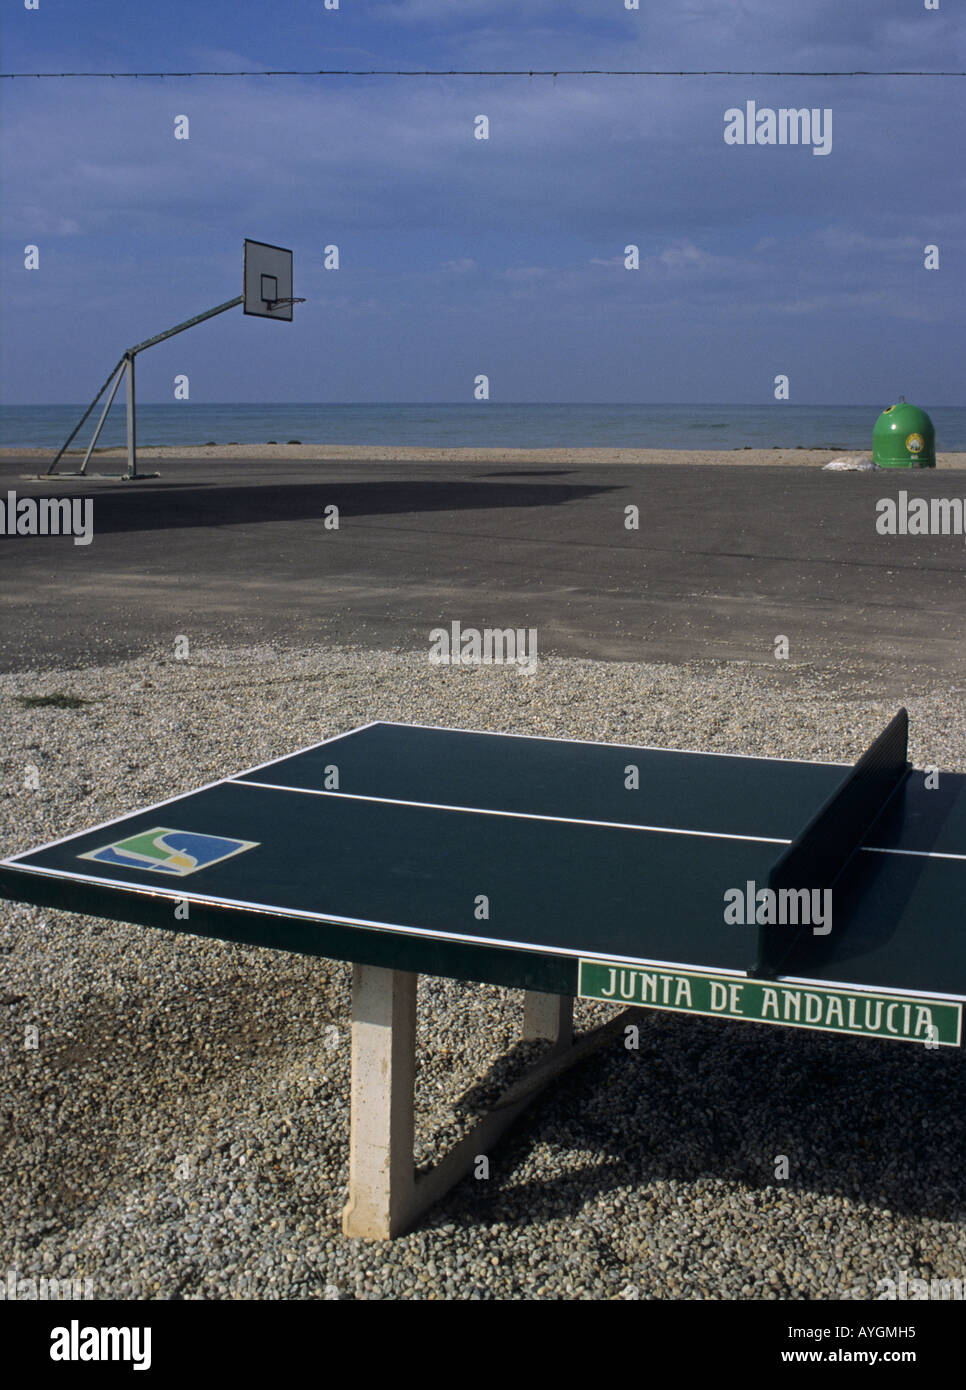 Medidas de cancha de Ping Pong (tenis de mesa), Mesa de ping pong, Mesas  de ping pong, Ping pong